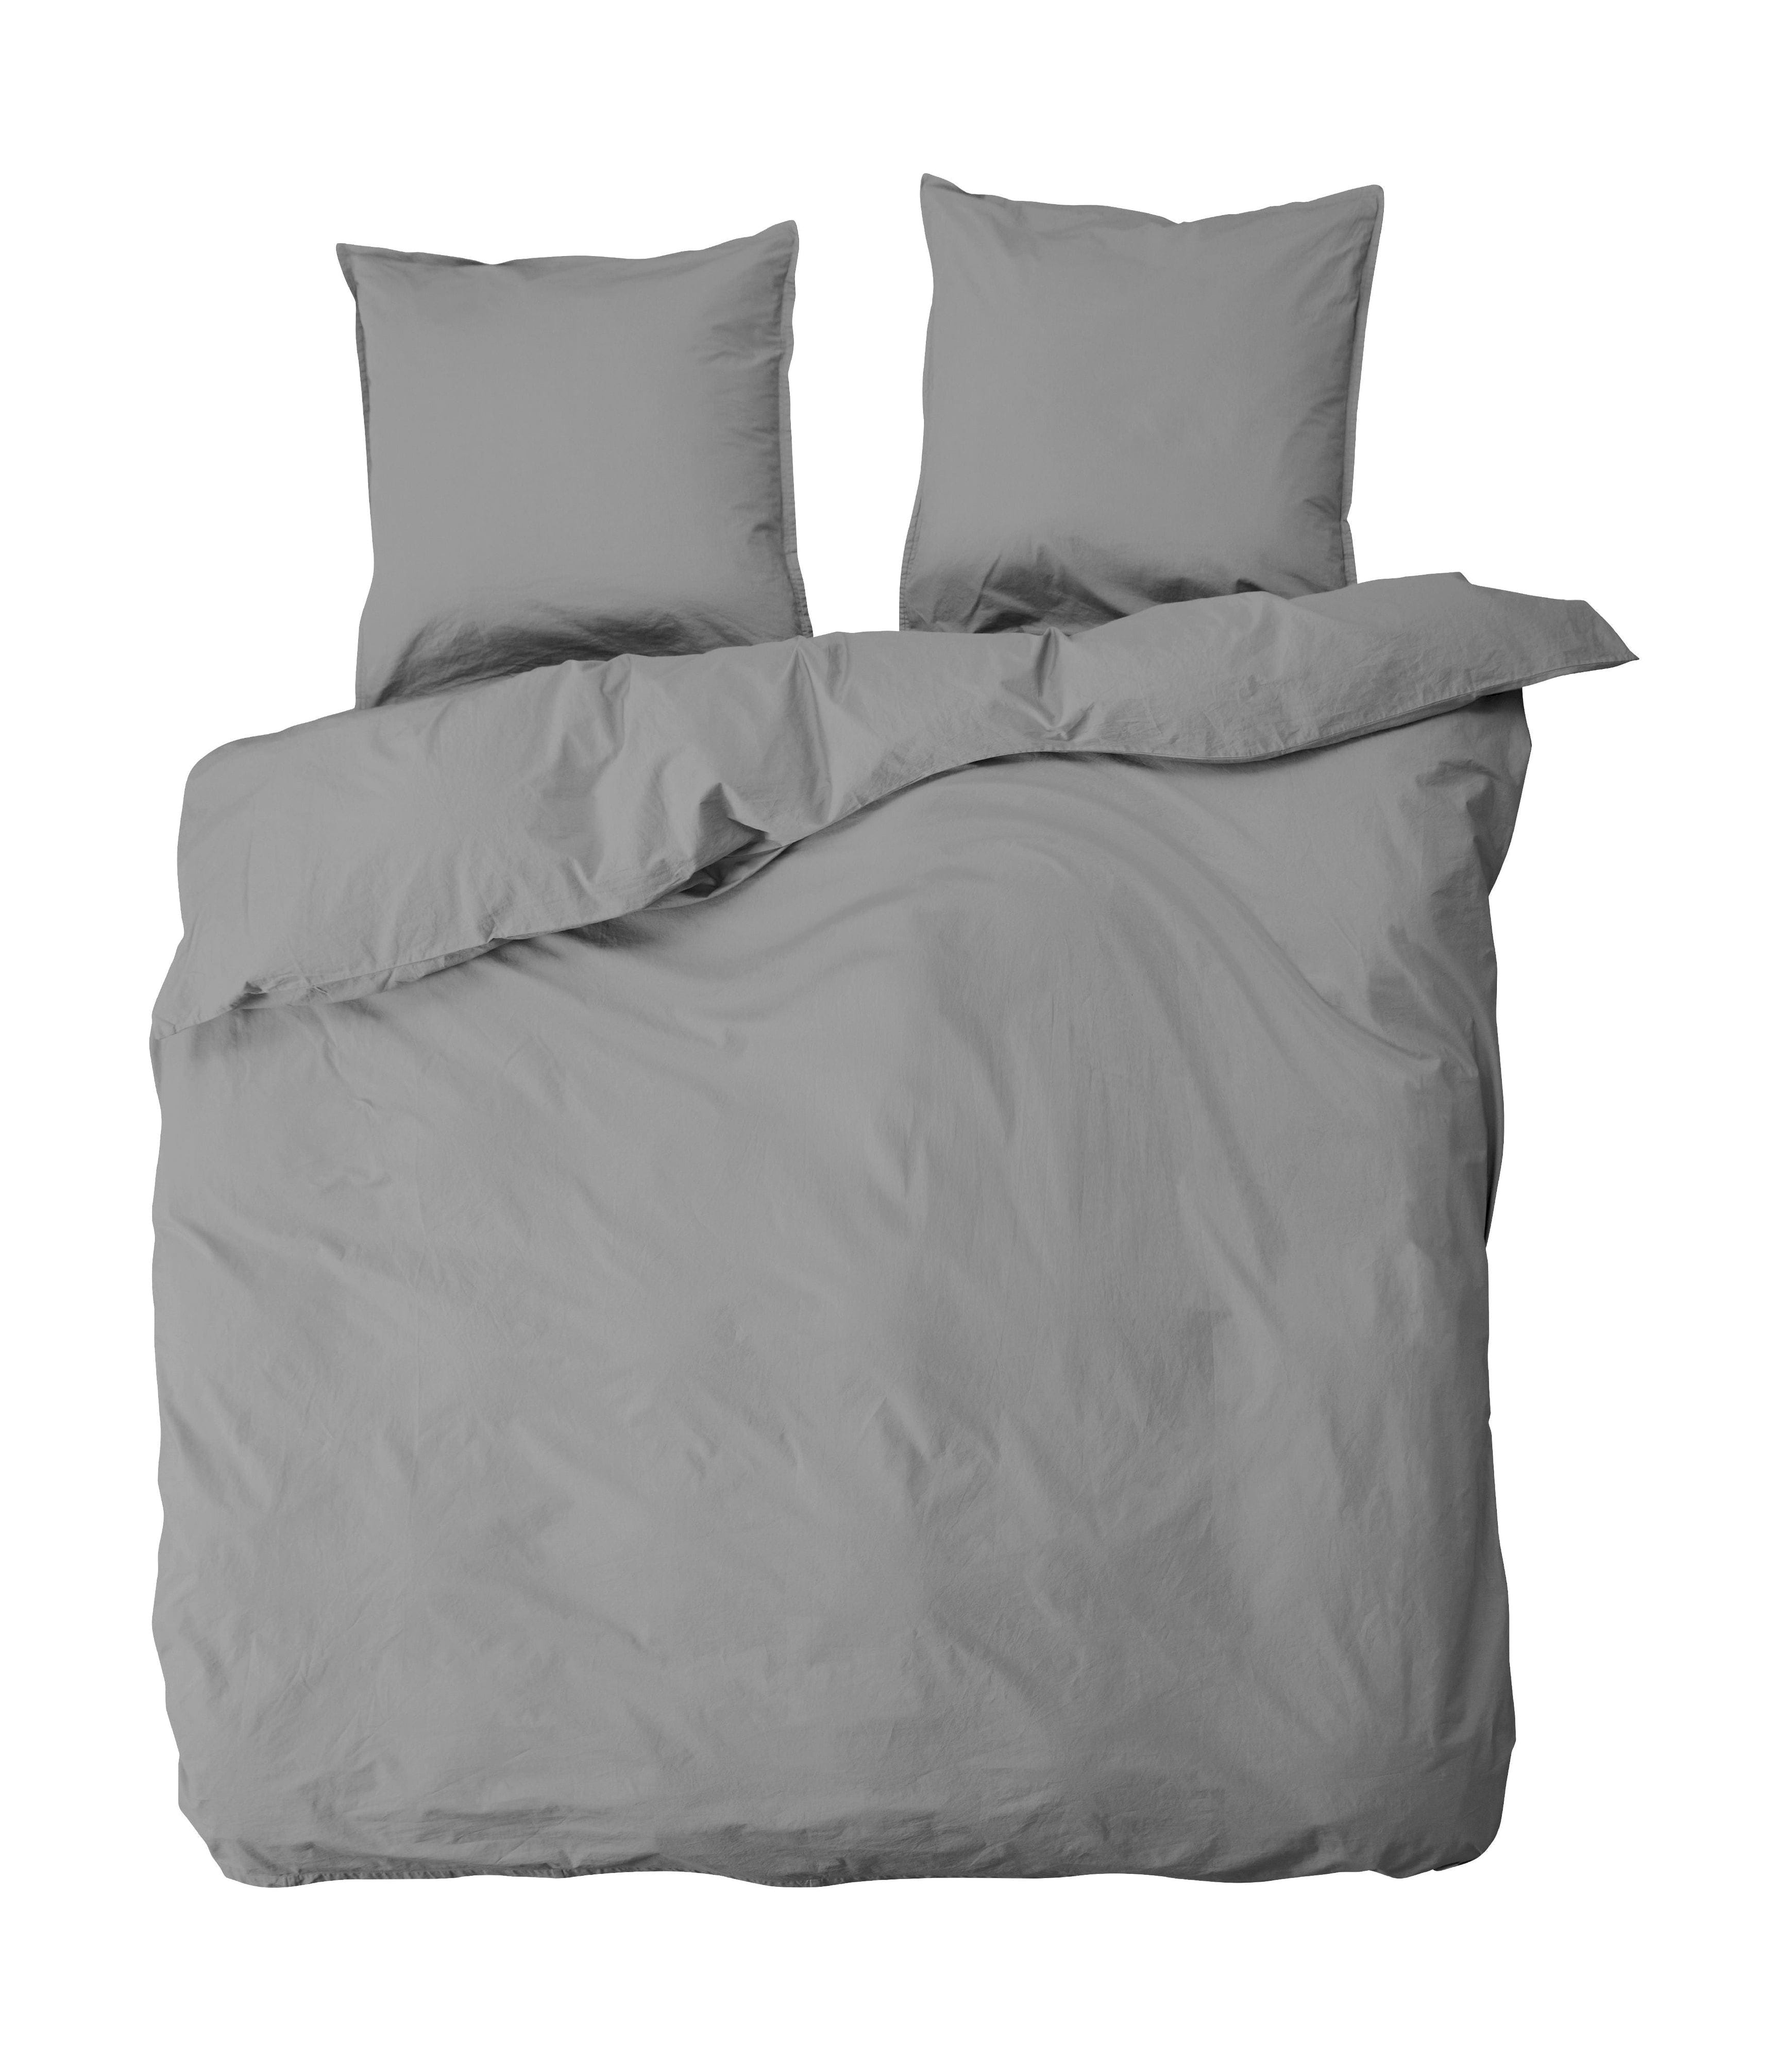 Av Nord Ingrid sängkläder set 220x220 cm, åska